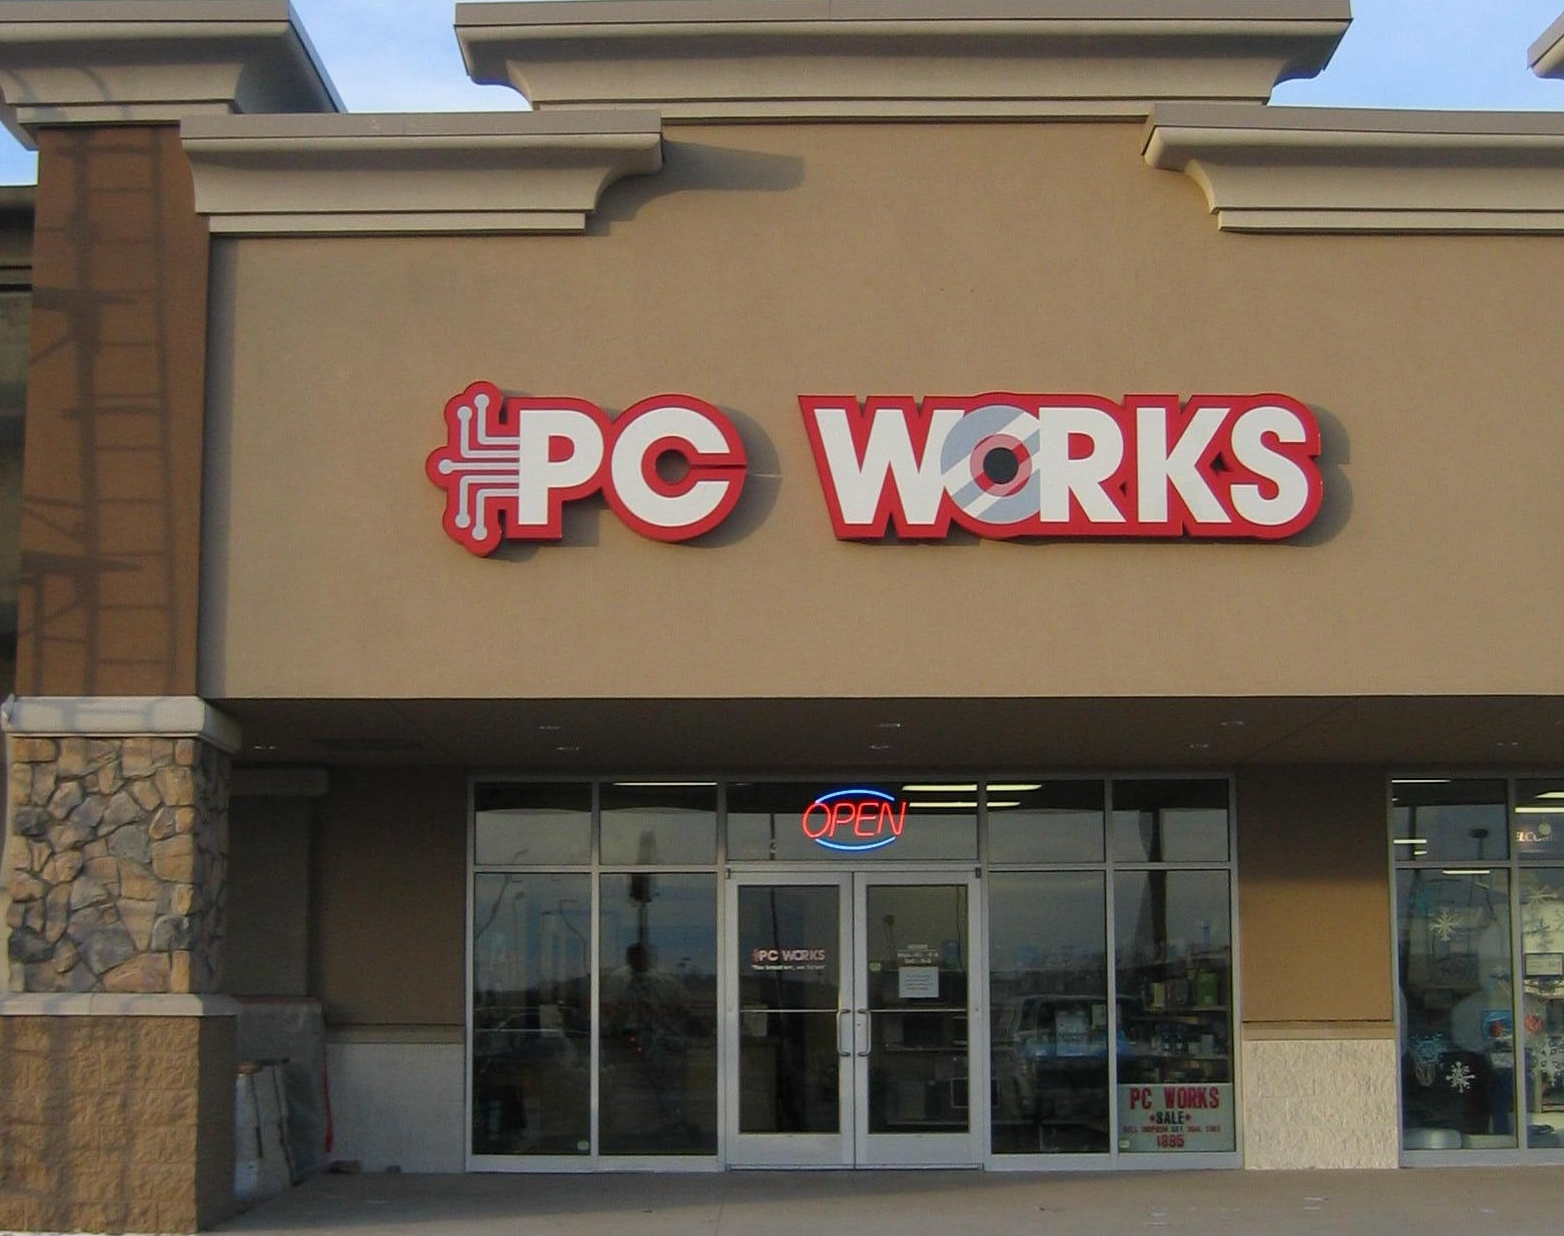 PC Works LLC